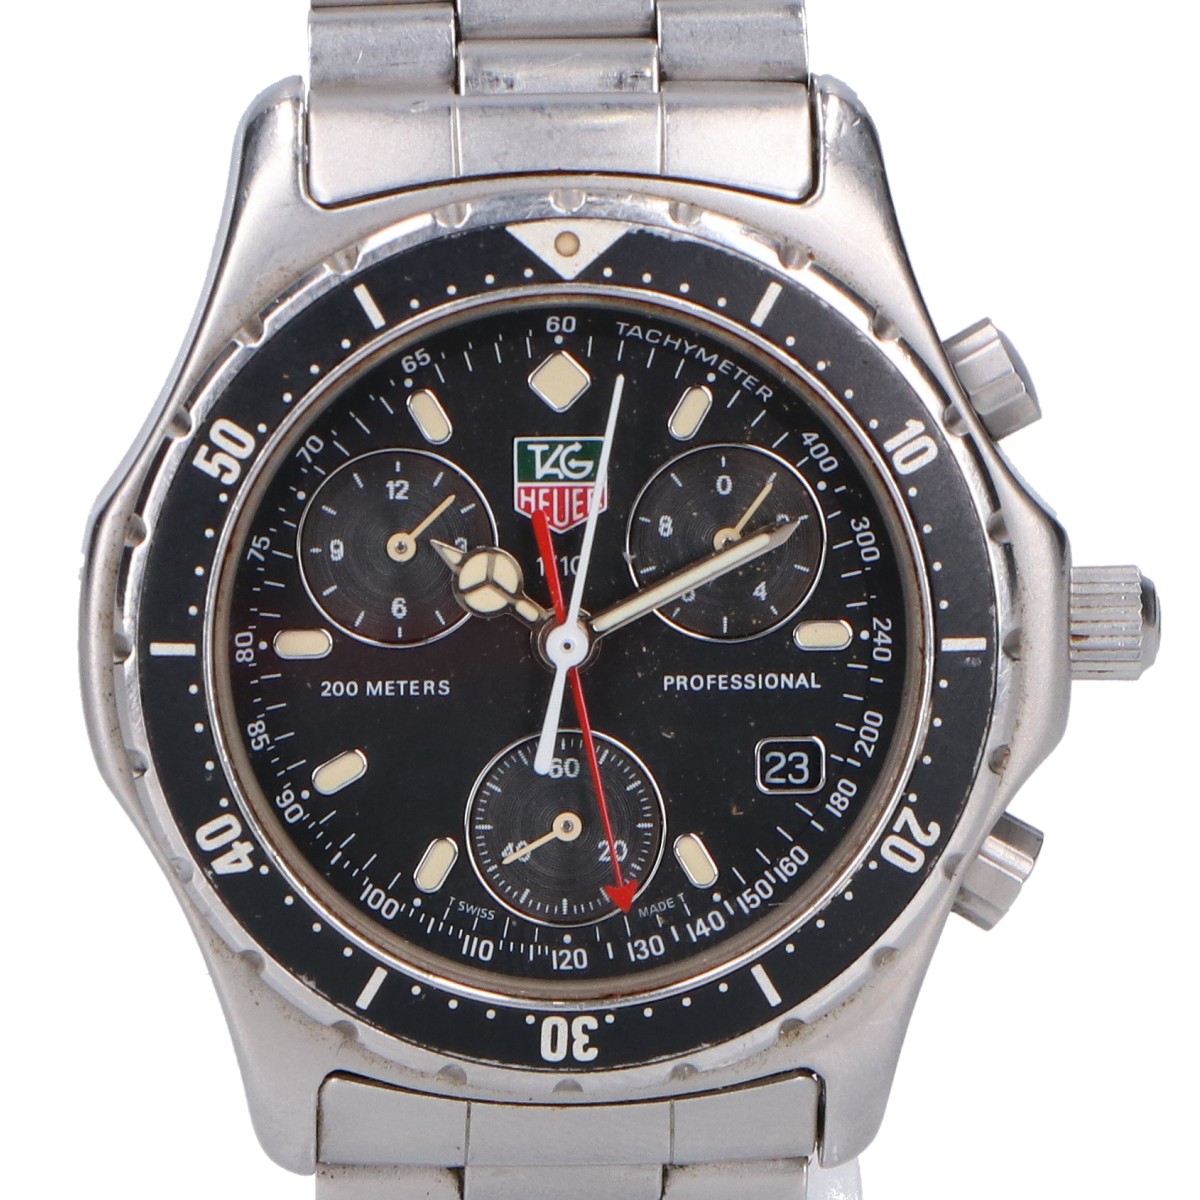 タグ・ホイヤーの570.206 2000プロフェッショナル クロノグラフ 逆回転防止ベゼル腕時計の買取実績です。